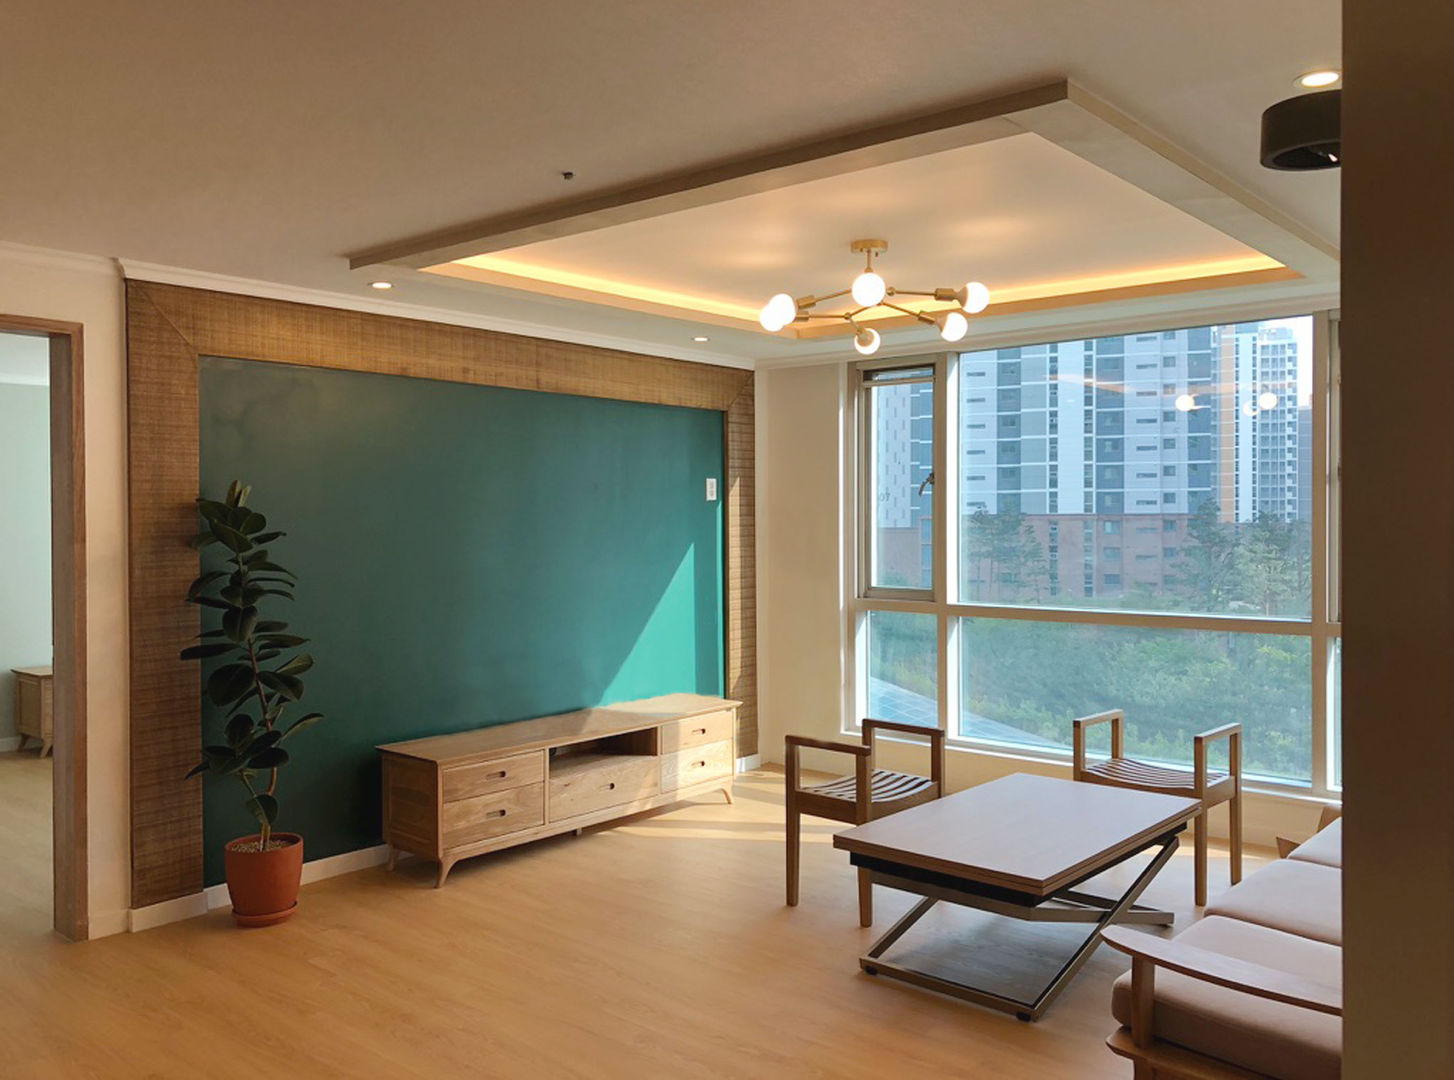 용산구 문배동 지오베르크 (주상복합) 33평, 덴보드 덴보드 Modern Living Room